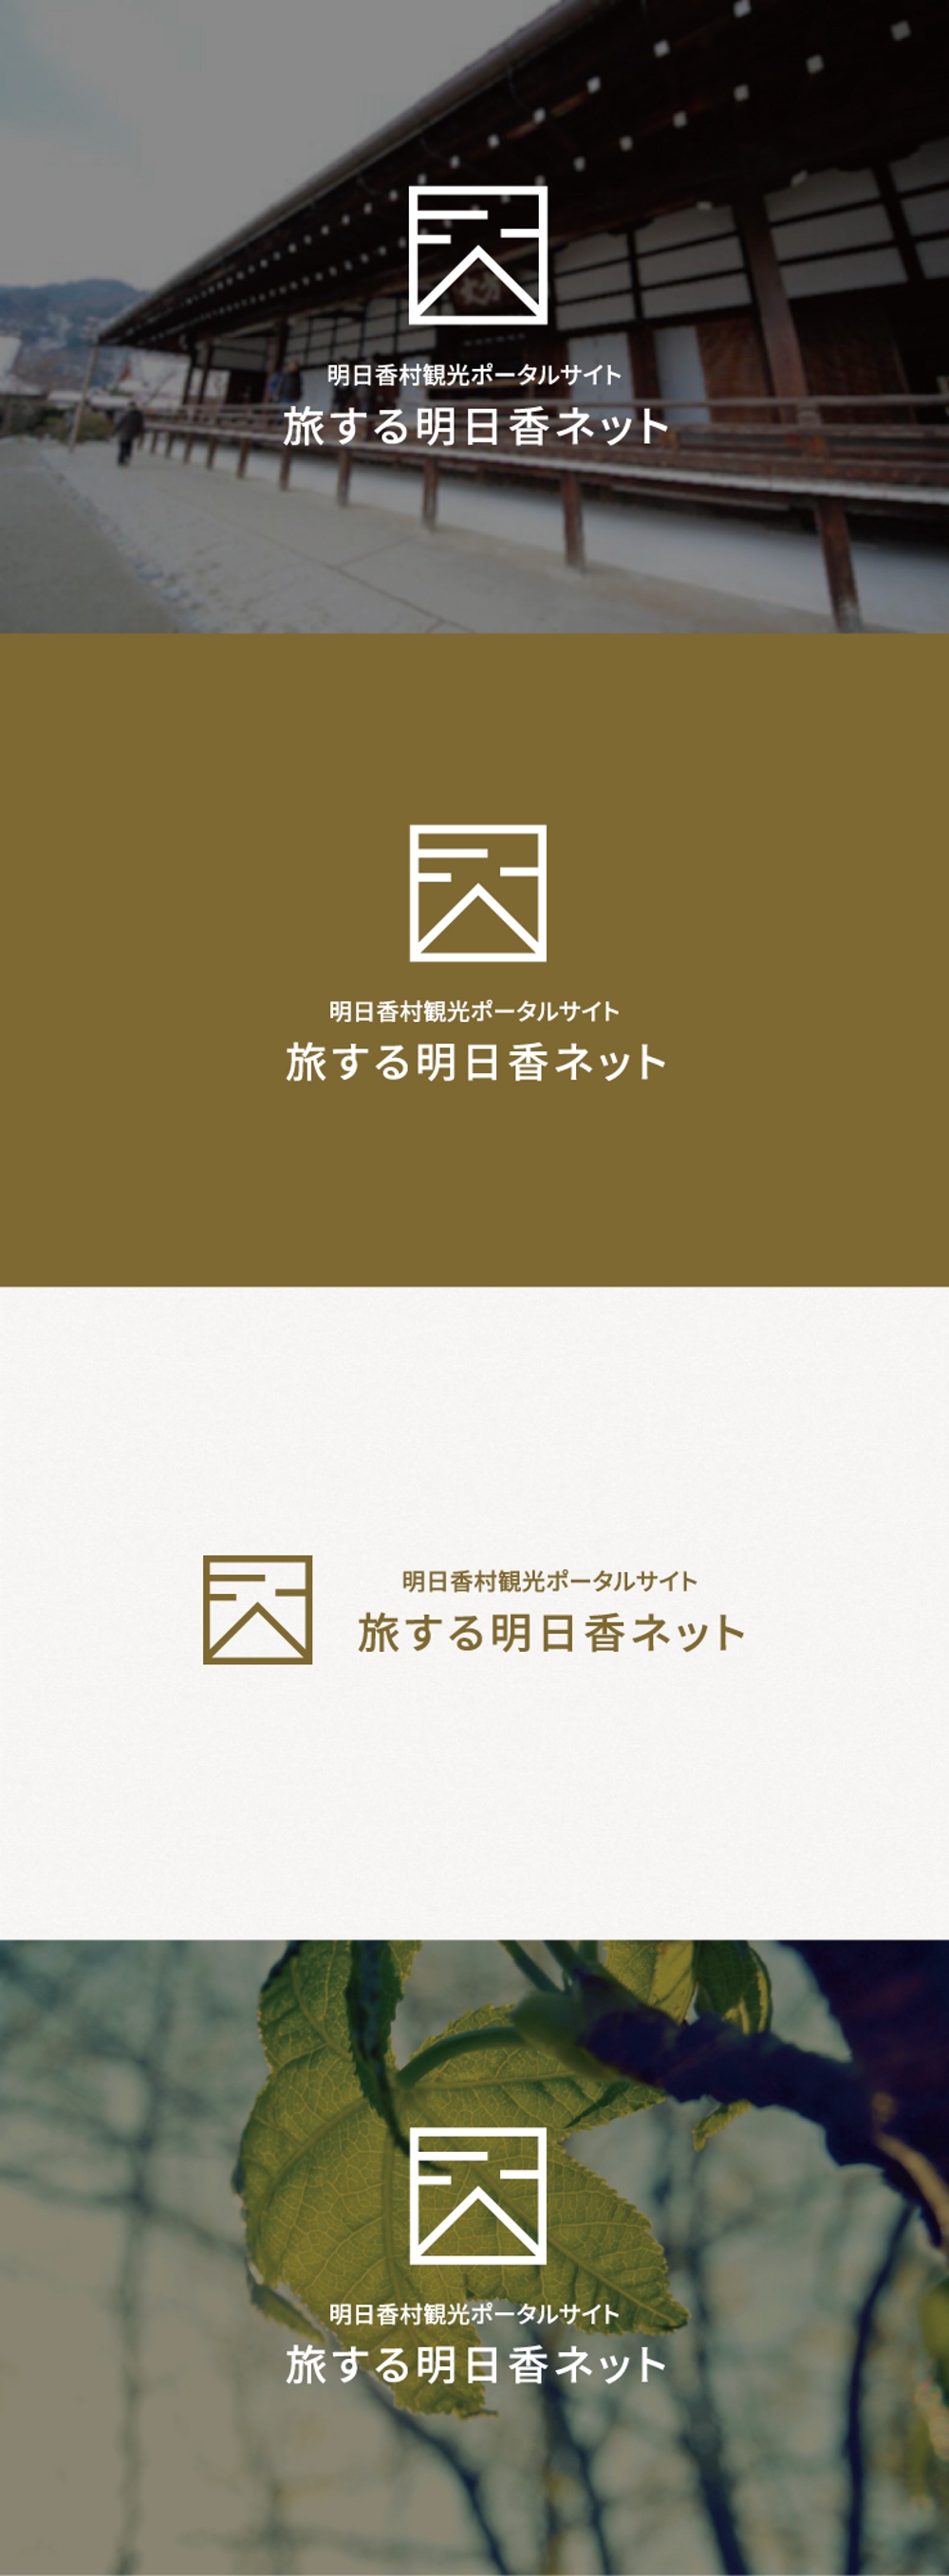 奈良県明日香村「観光ポータルサイト」のロゴ